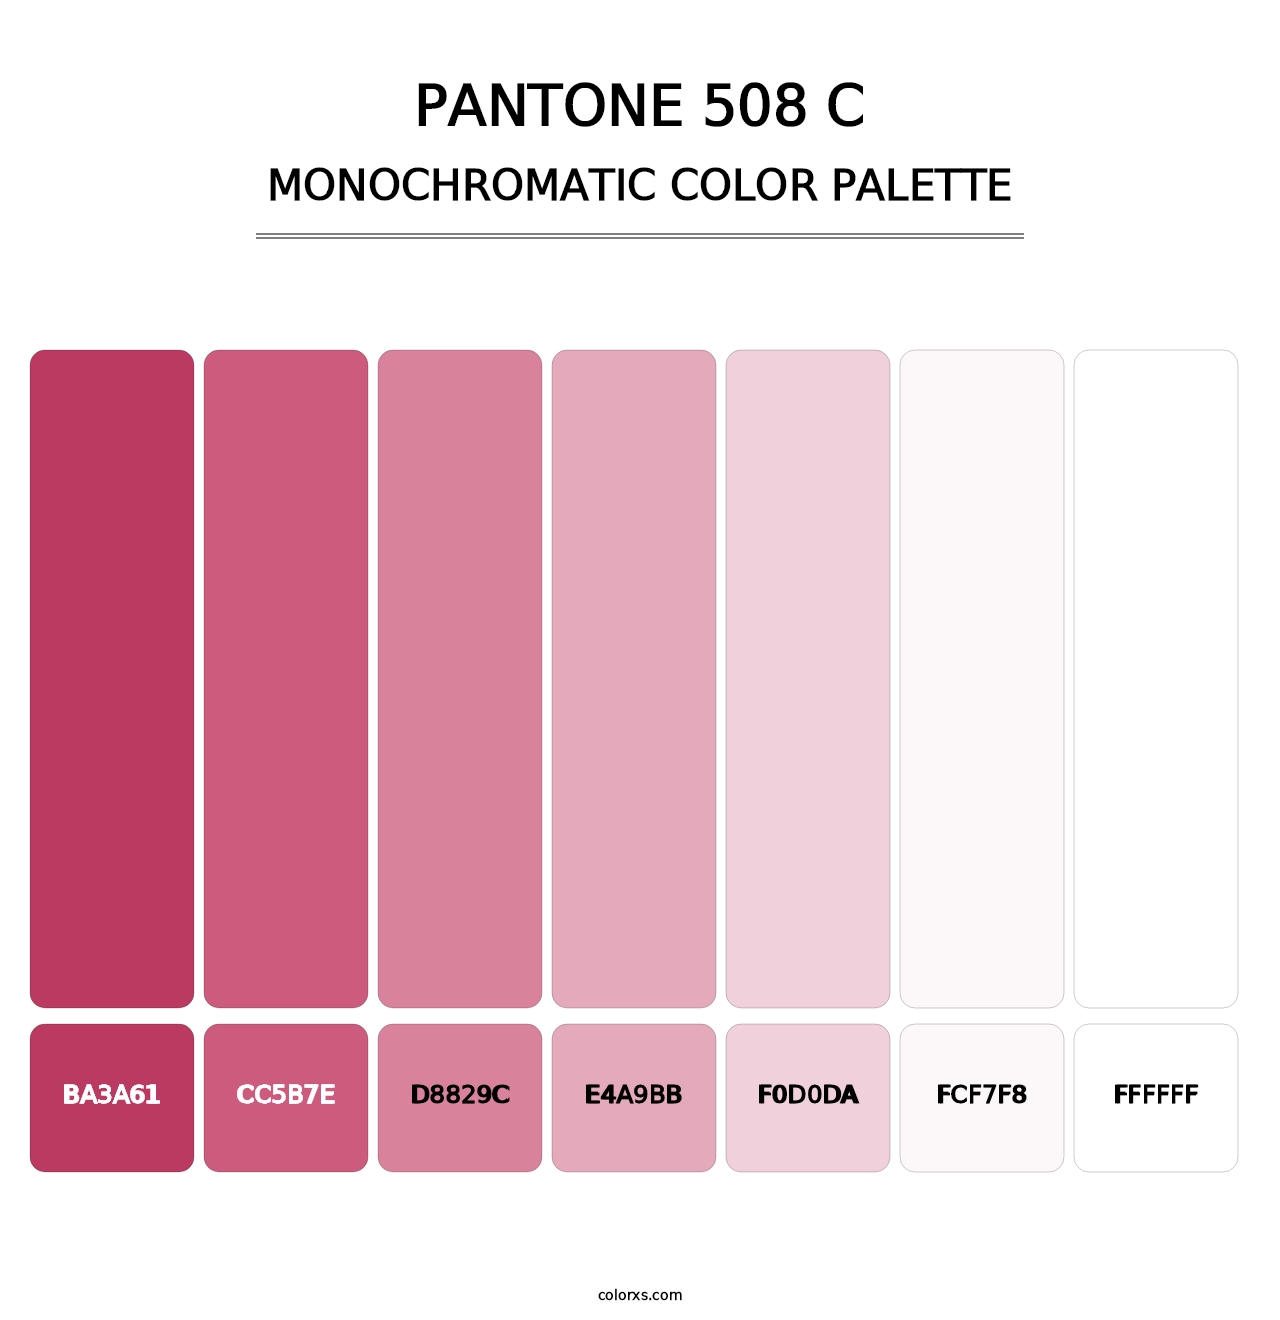 PANTONE 508 C - Monochromatic Color Palette